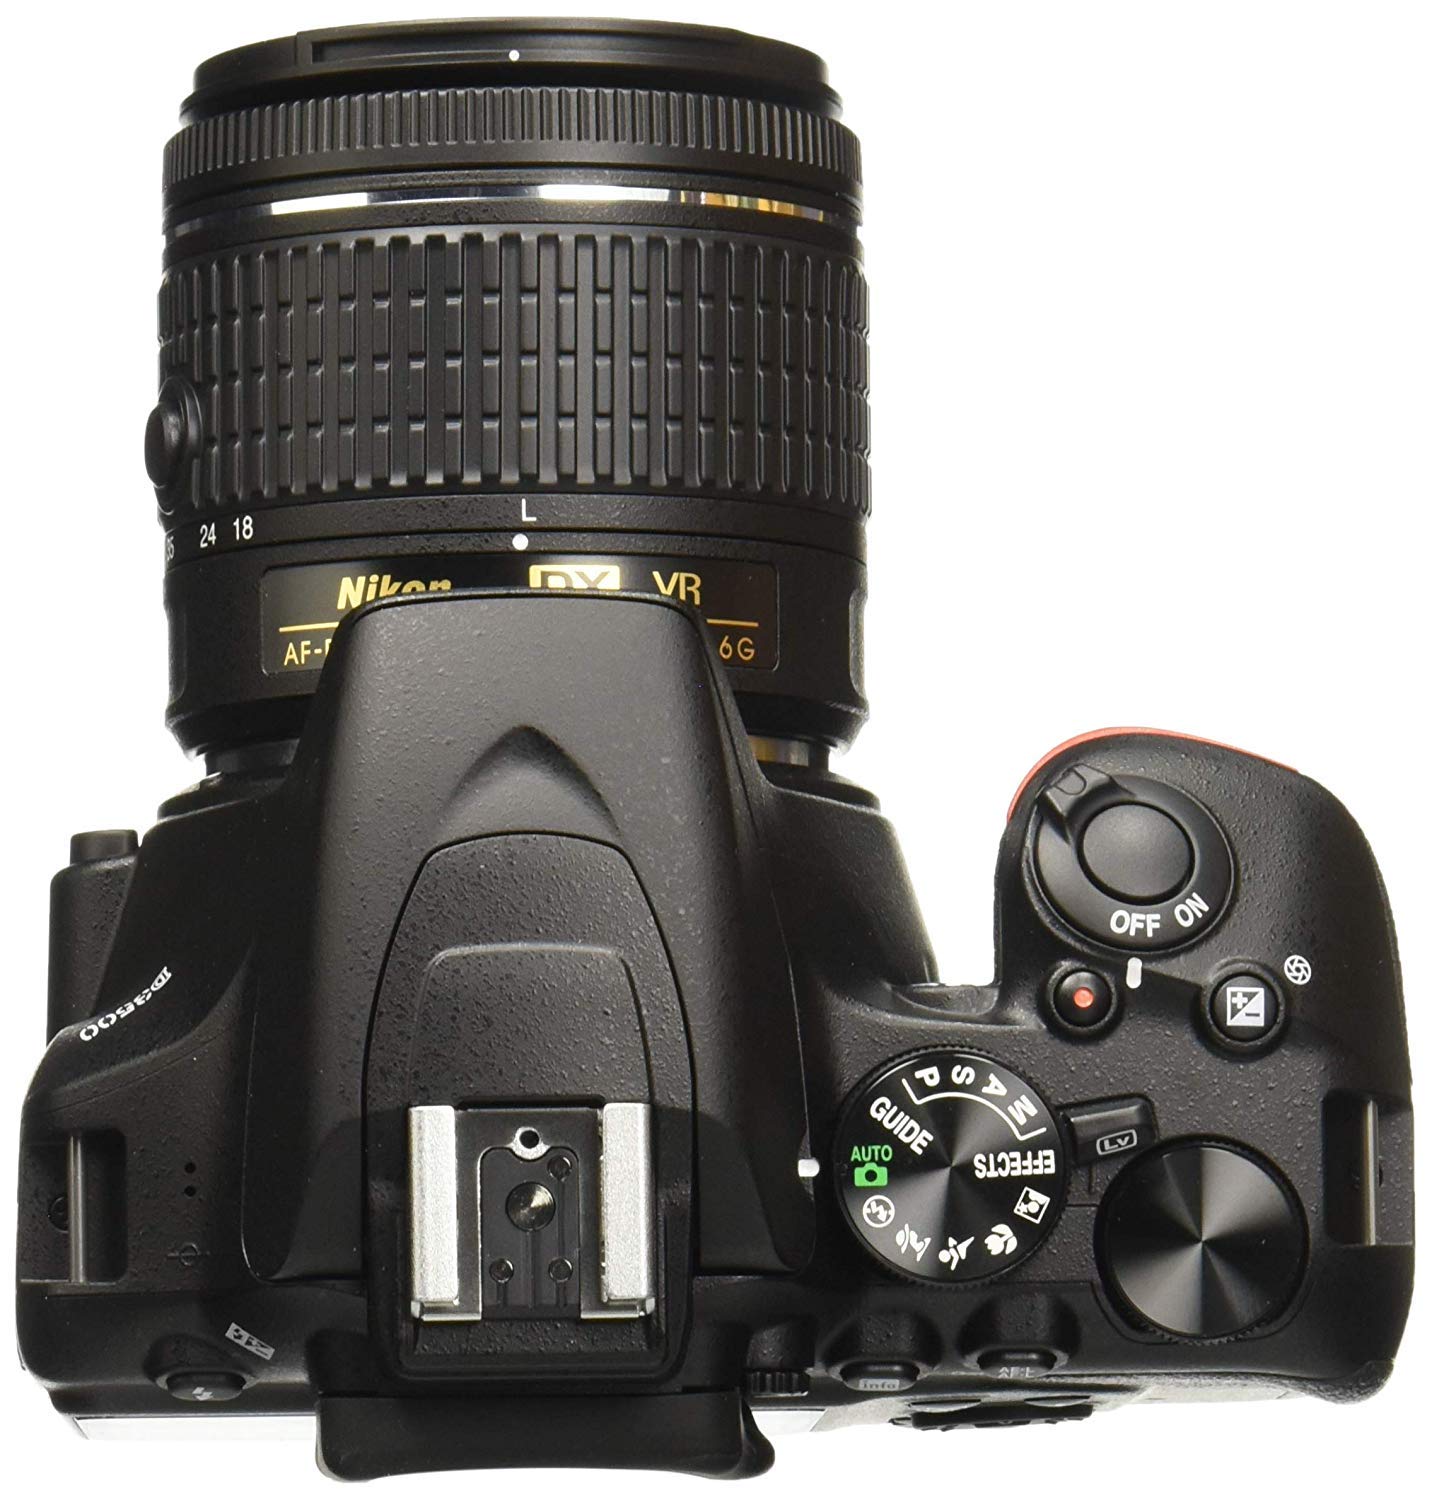 D3500 W/AF-P DX NIKKOR 18-55mm f/3.5-5.6G VR Black - Essential Accessories Bundle